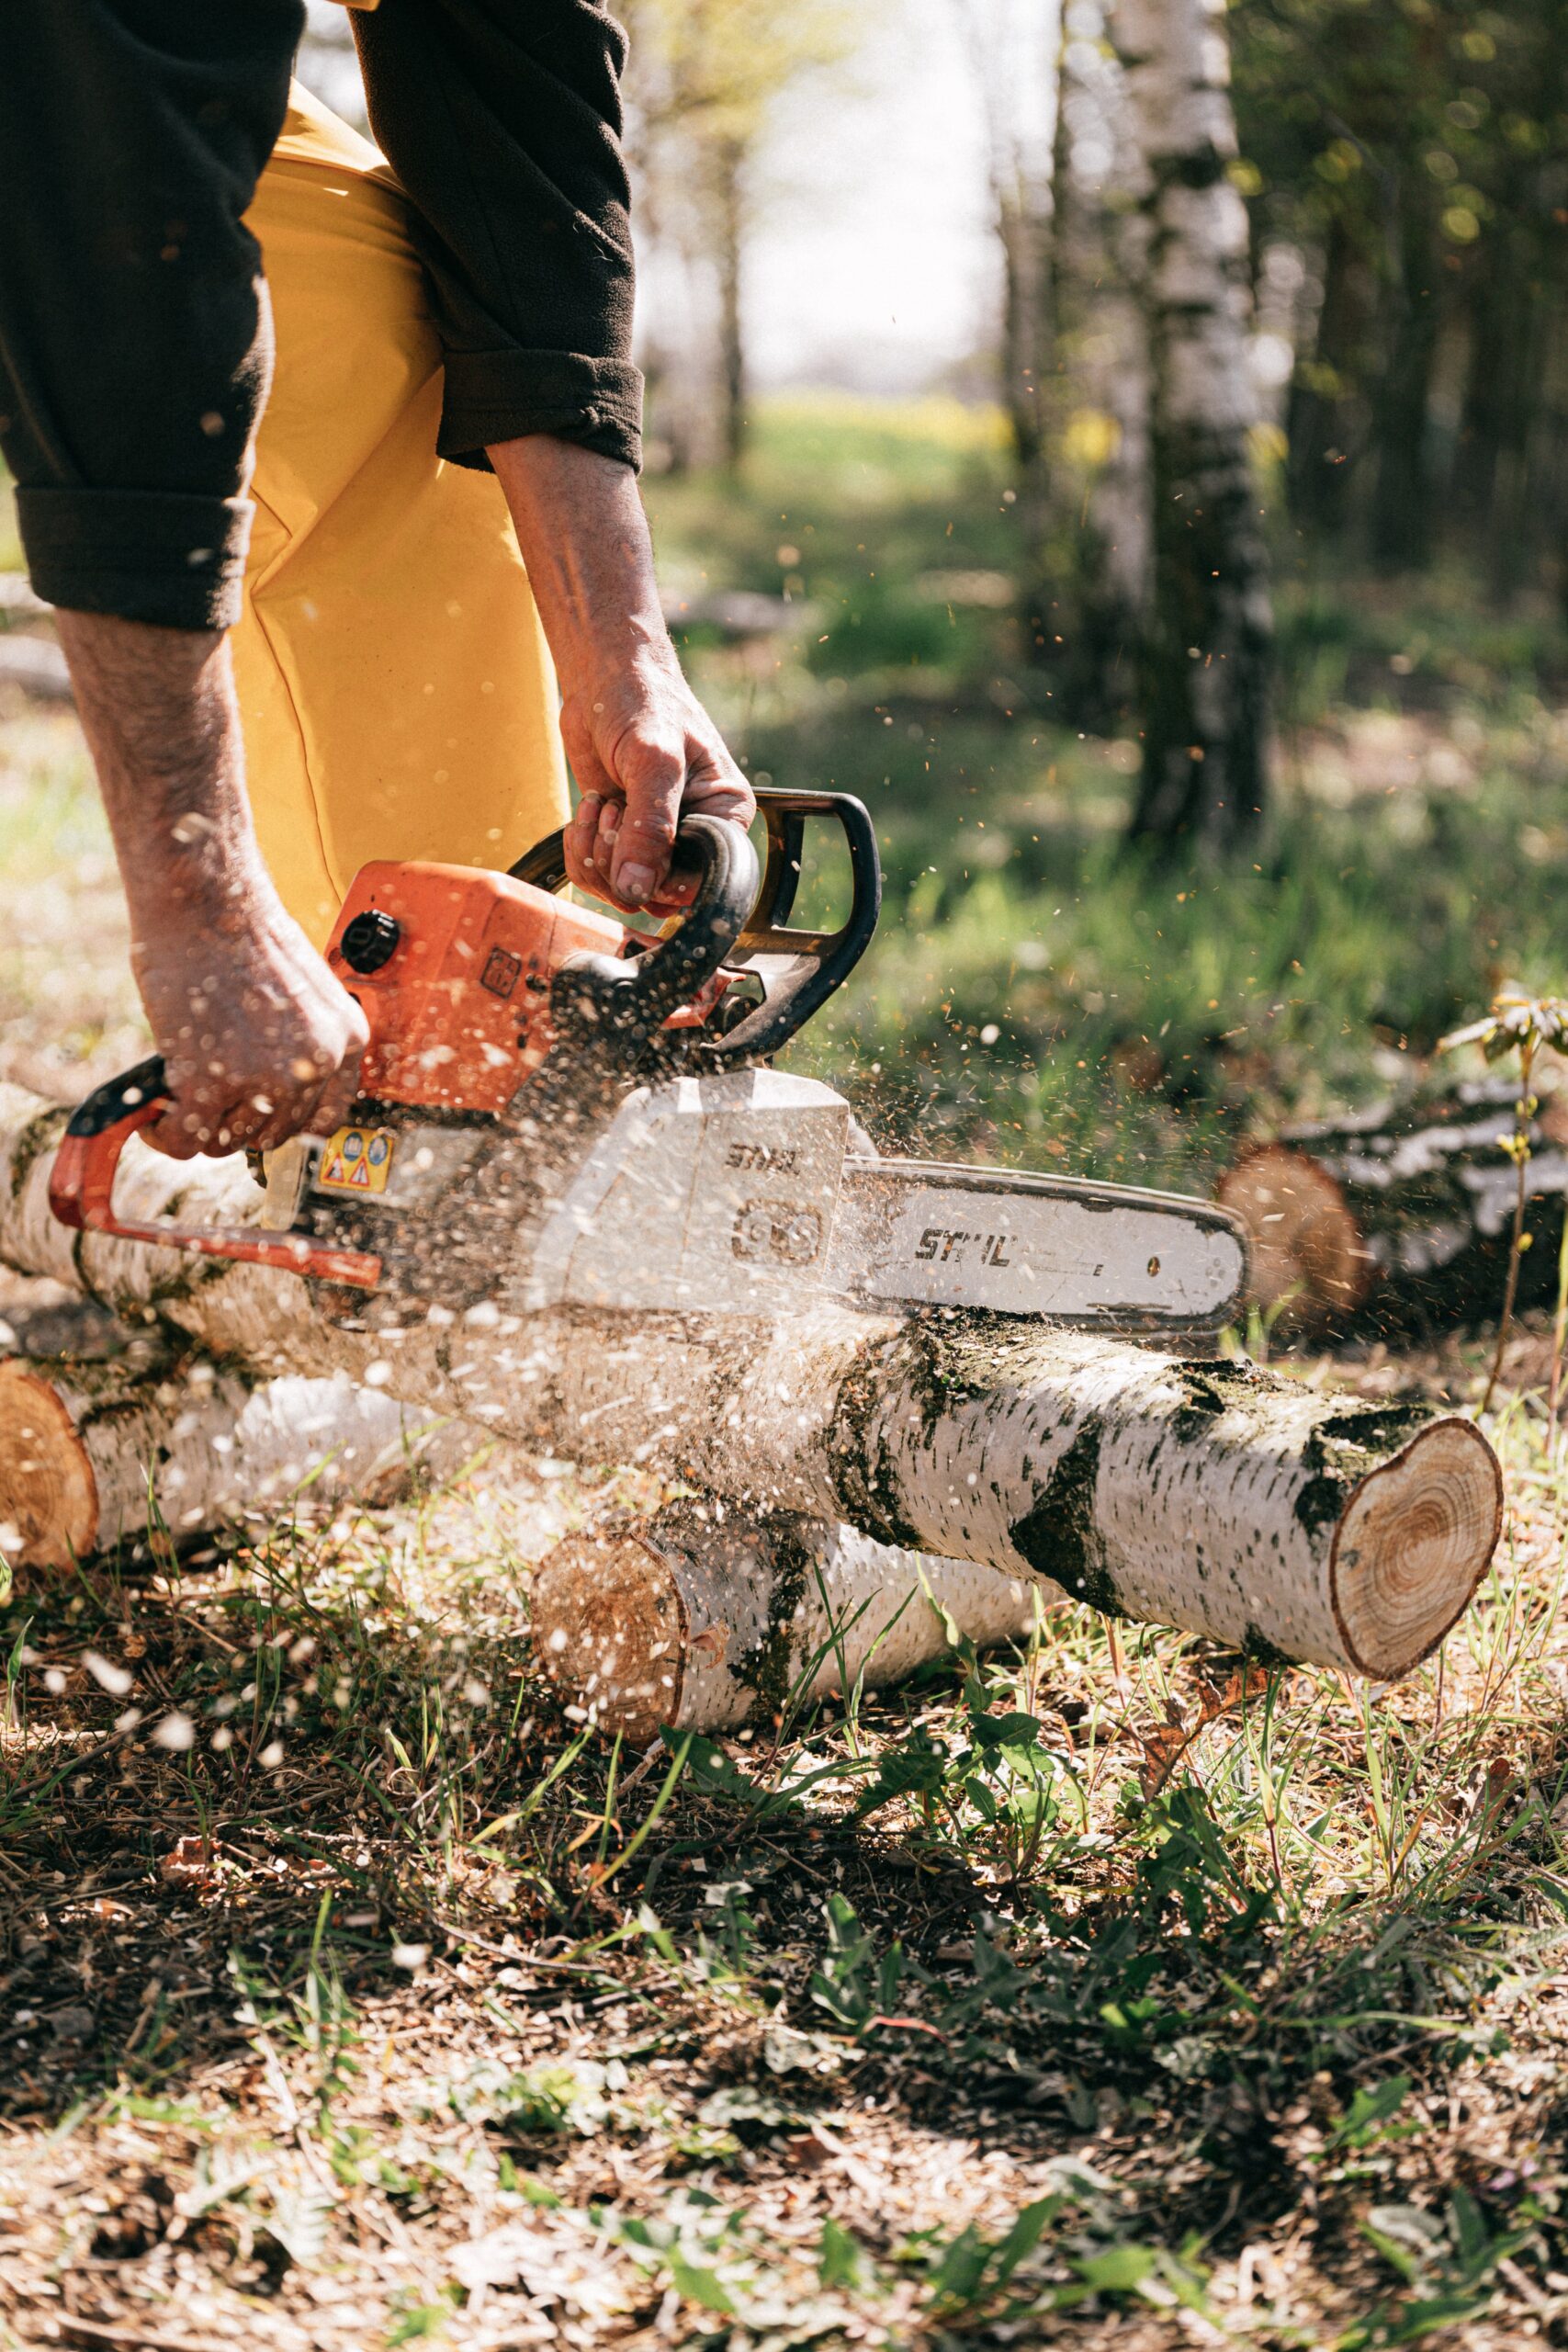 Vilken Arboristutrustning är mest avgörande: Klätterrep, motorsågskedja eller karbinhake?